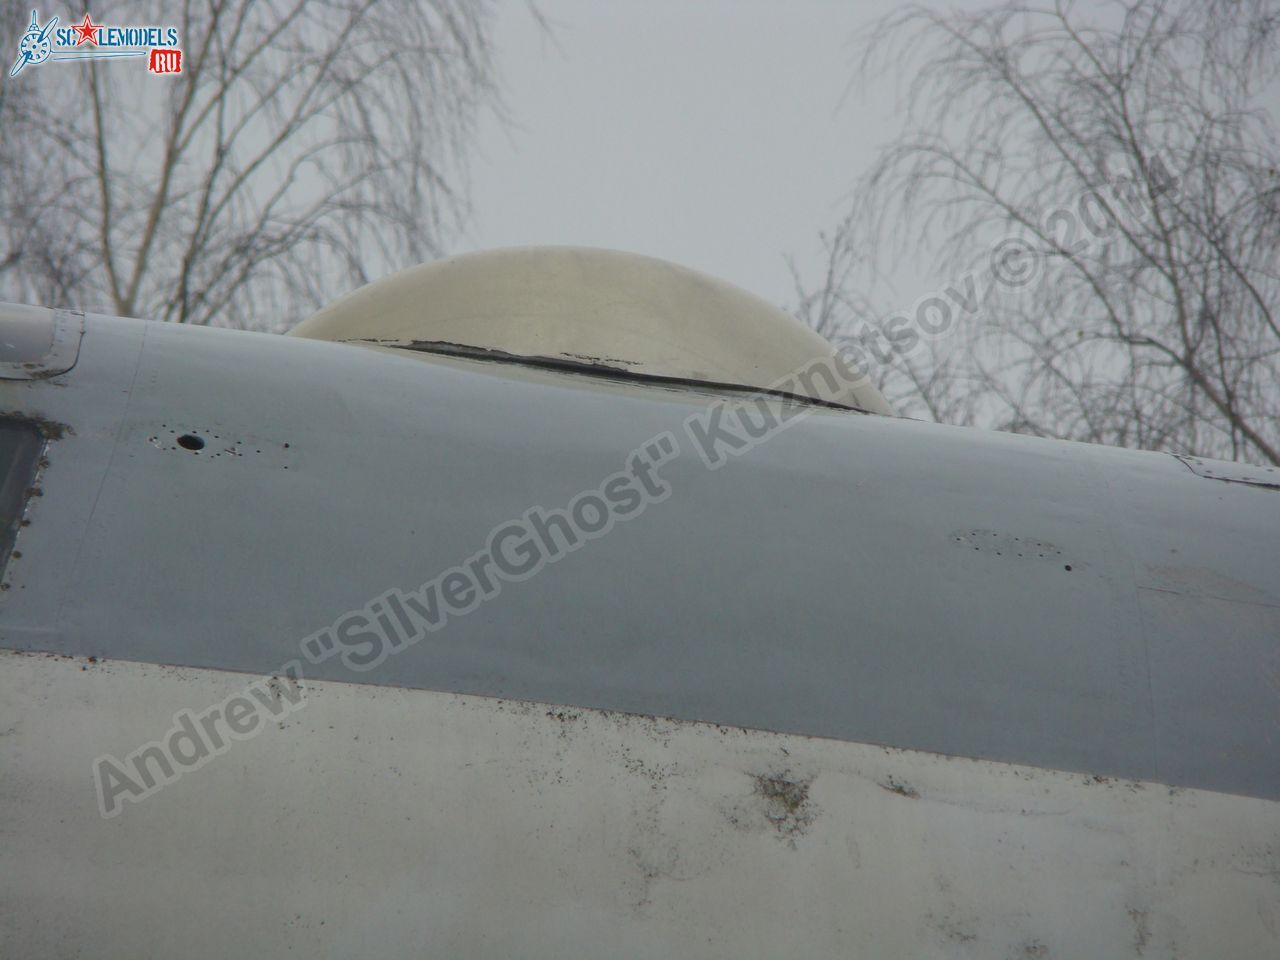 Tu-16_Badger_Smolensk_0013.jpg